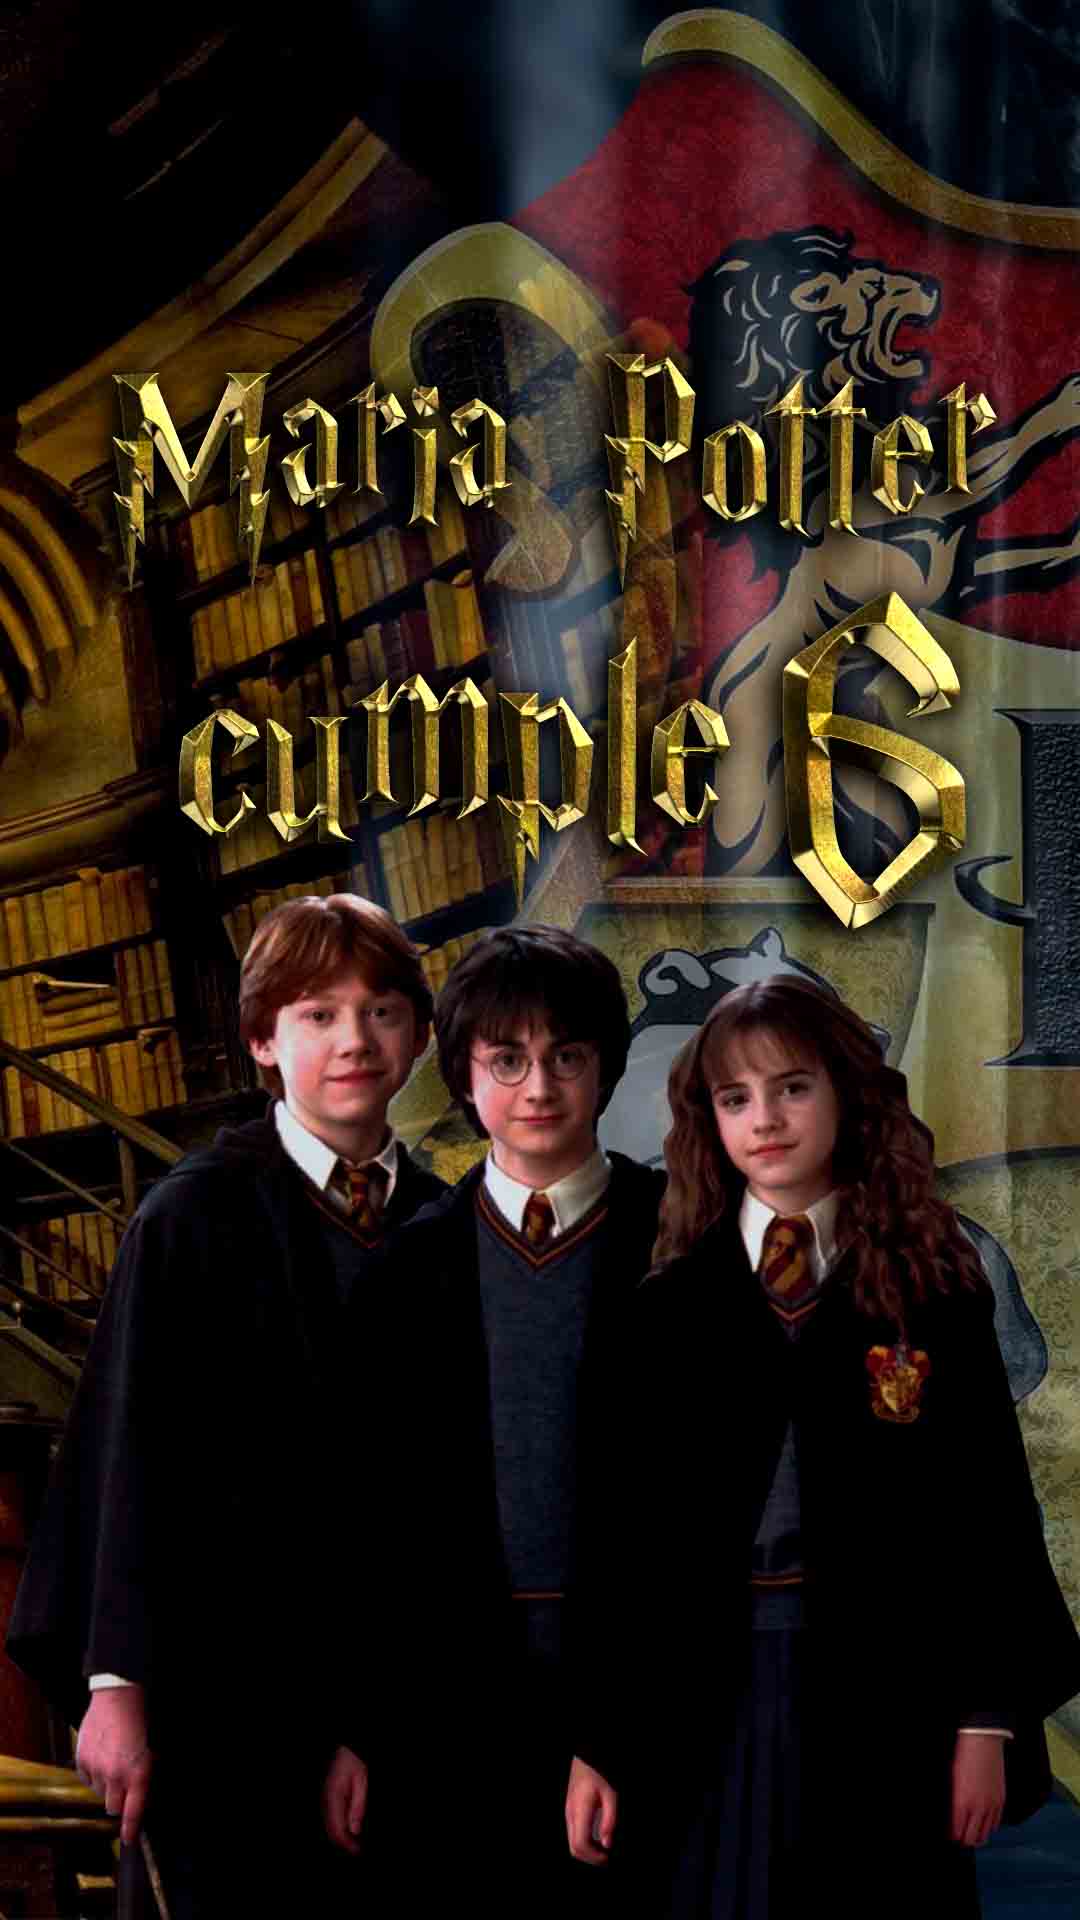 Banner comuniones de harry Potter o Hermione personalizados online –  Entrededos